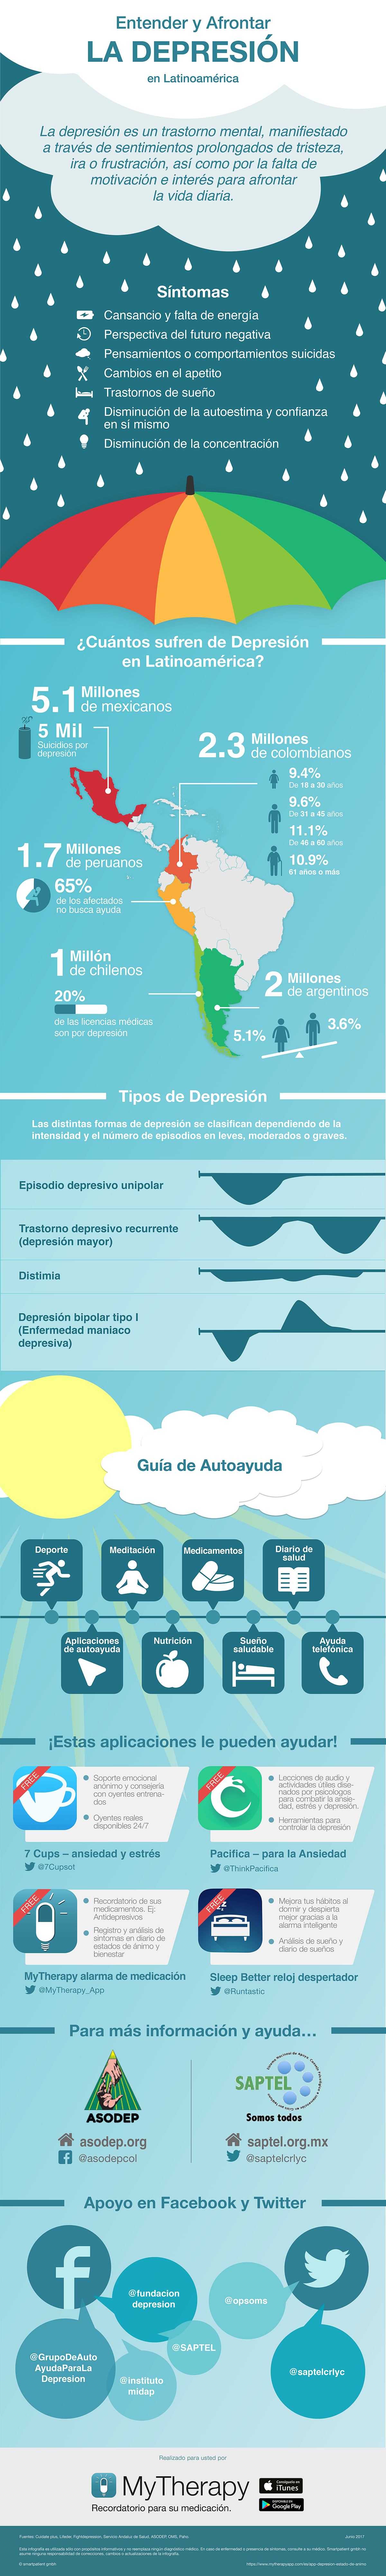 Depresión en Latinoamérica